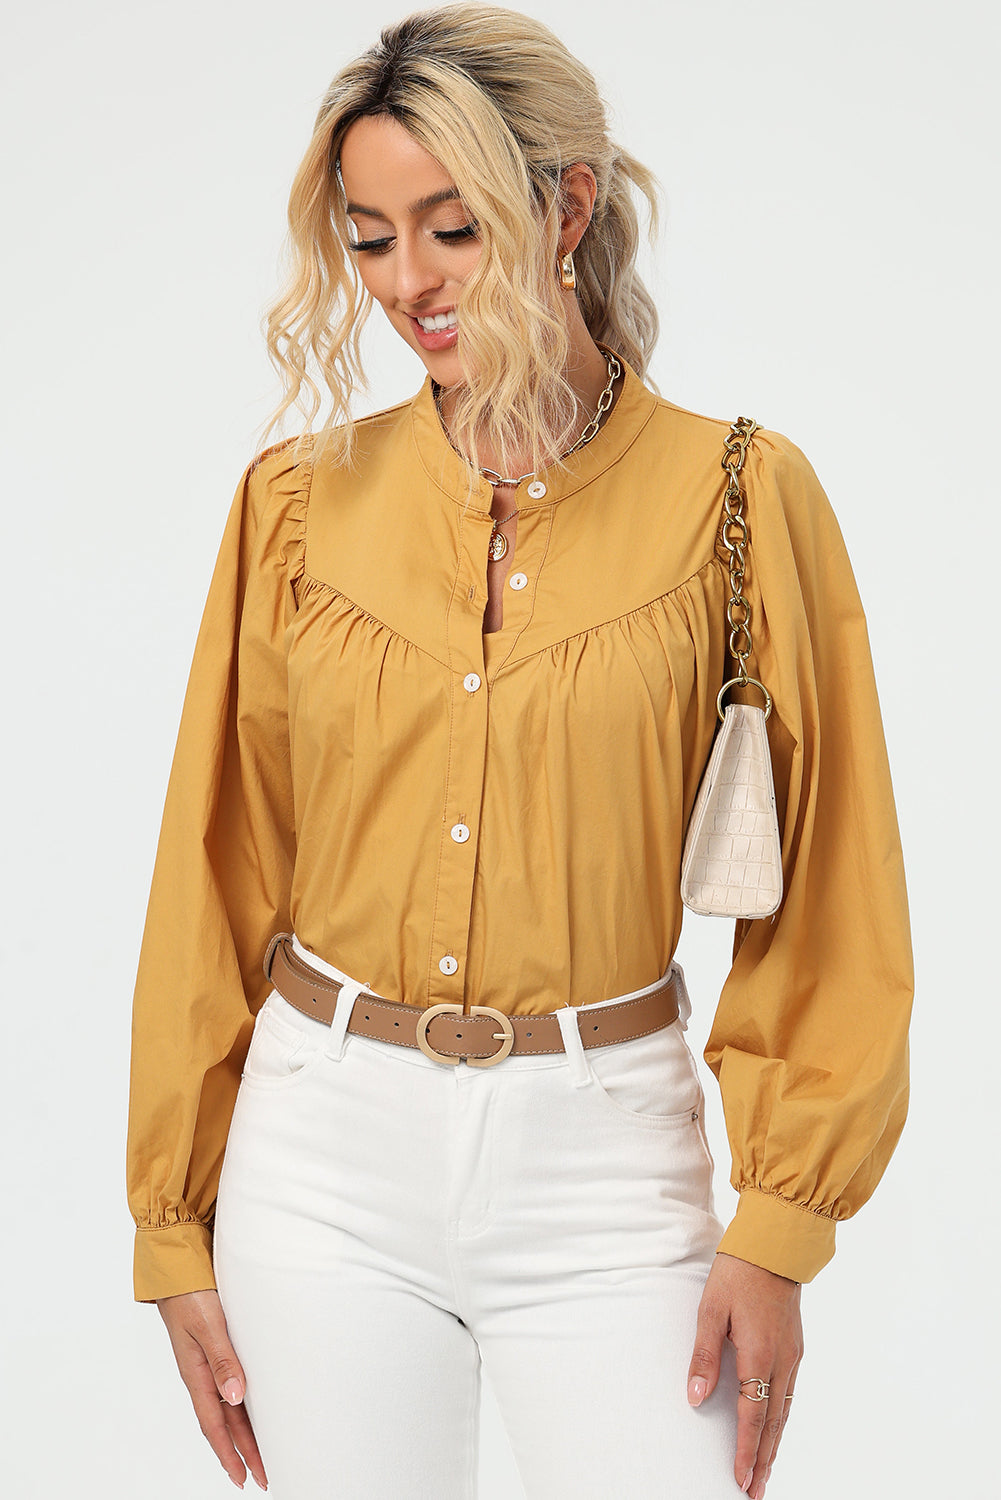 TEEK - Mustard Ruched Button Up Long Sleeve Shirt TOPS TEEK Trend   